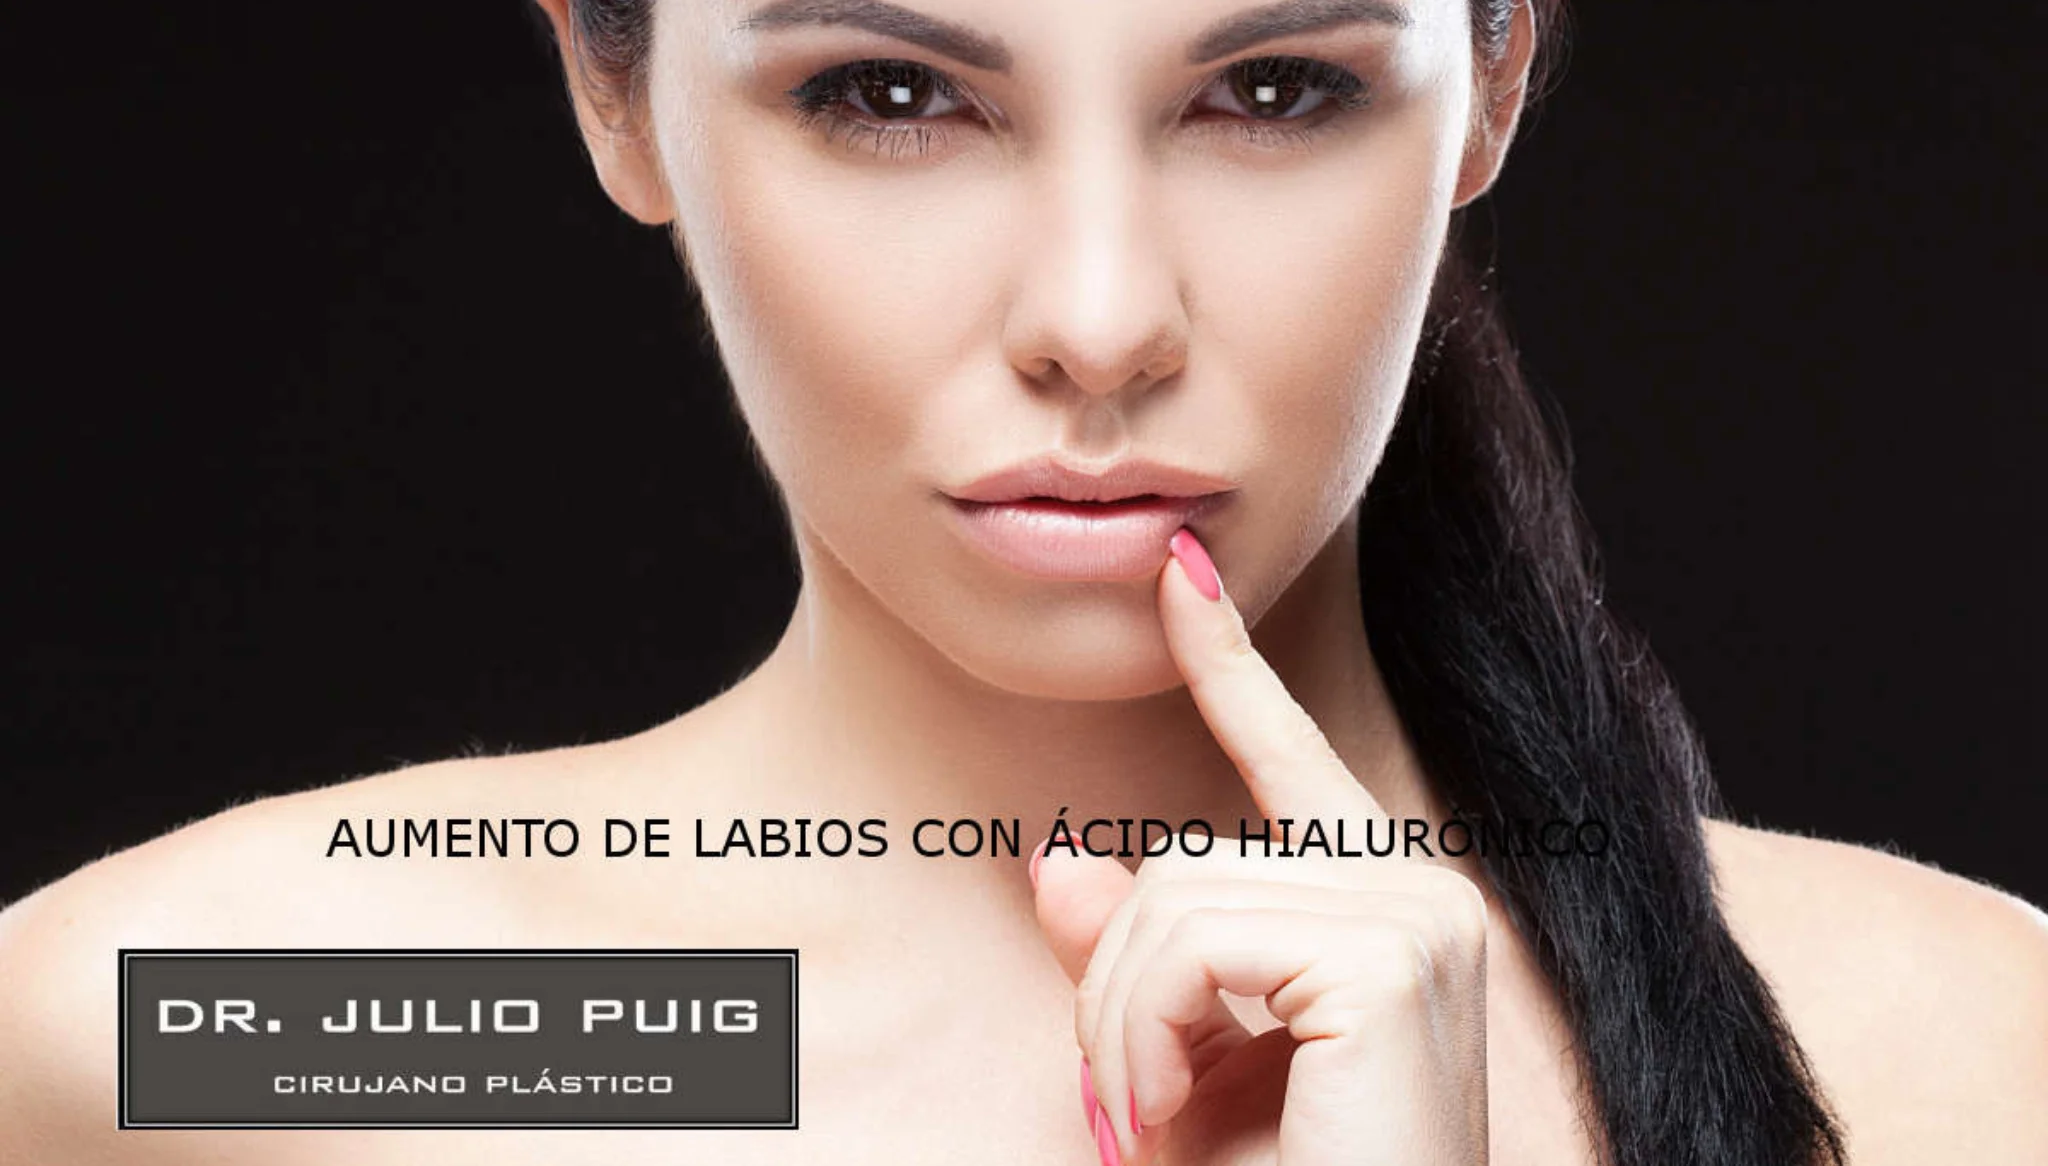 Aumento de labios con ácido hialurónico – Dr Julio Puig